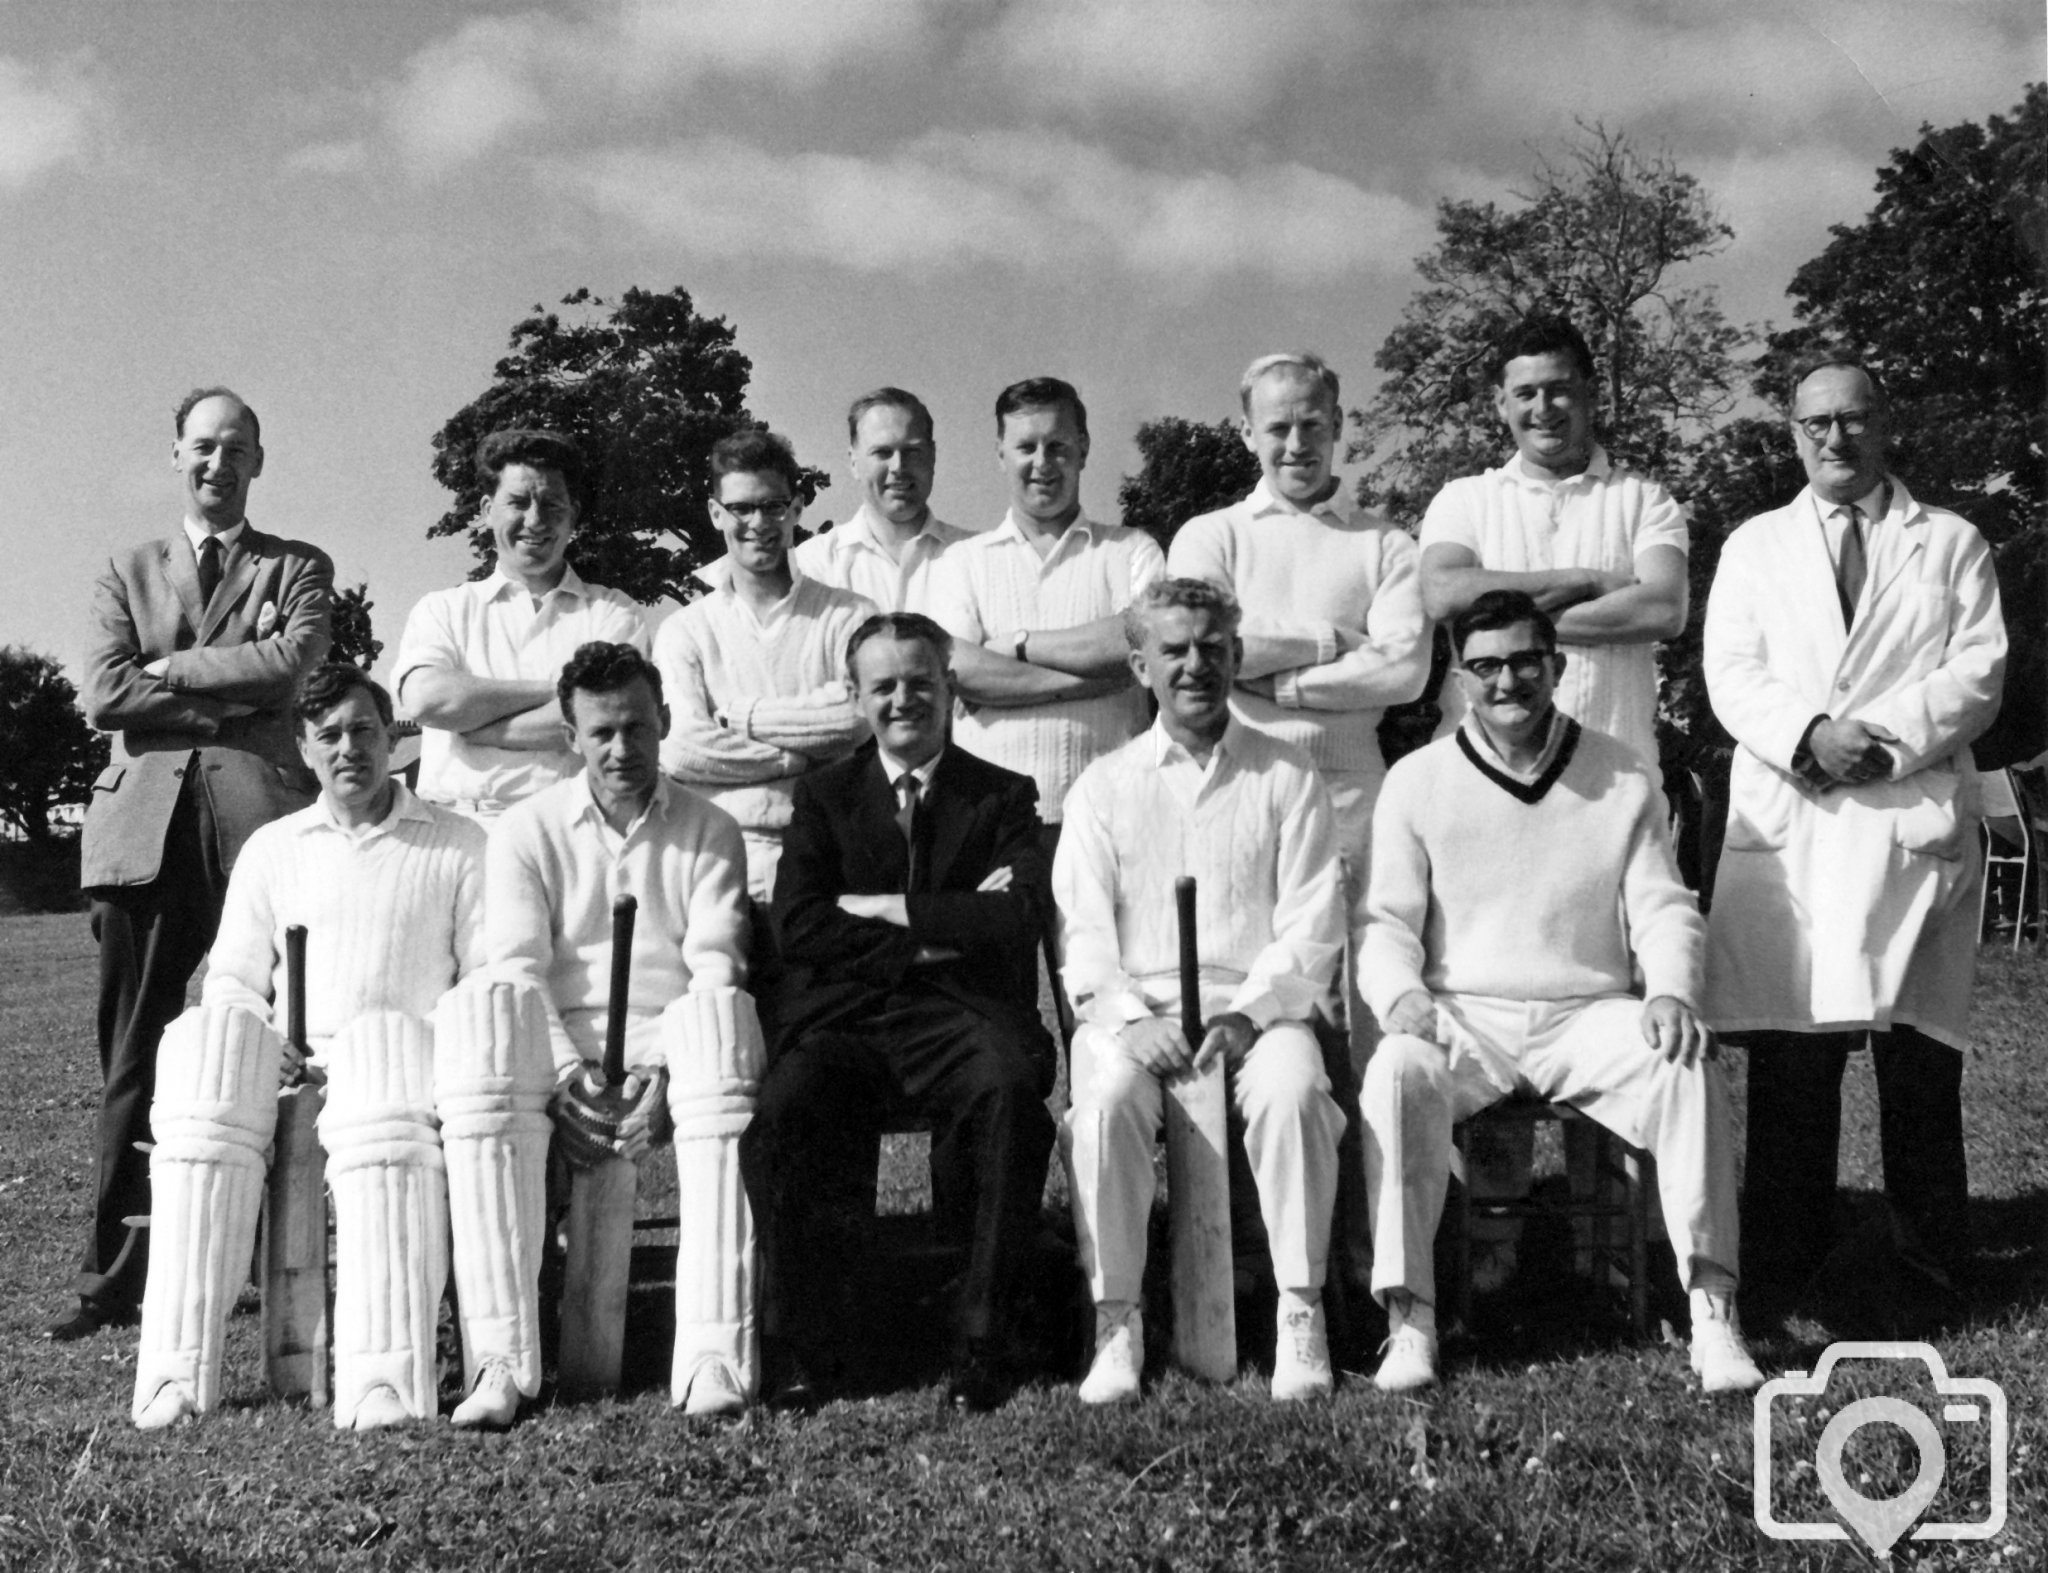 Staff Cricket Team 1963